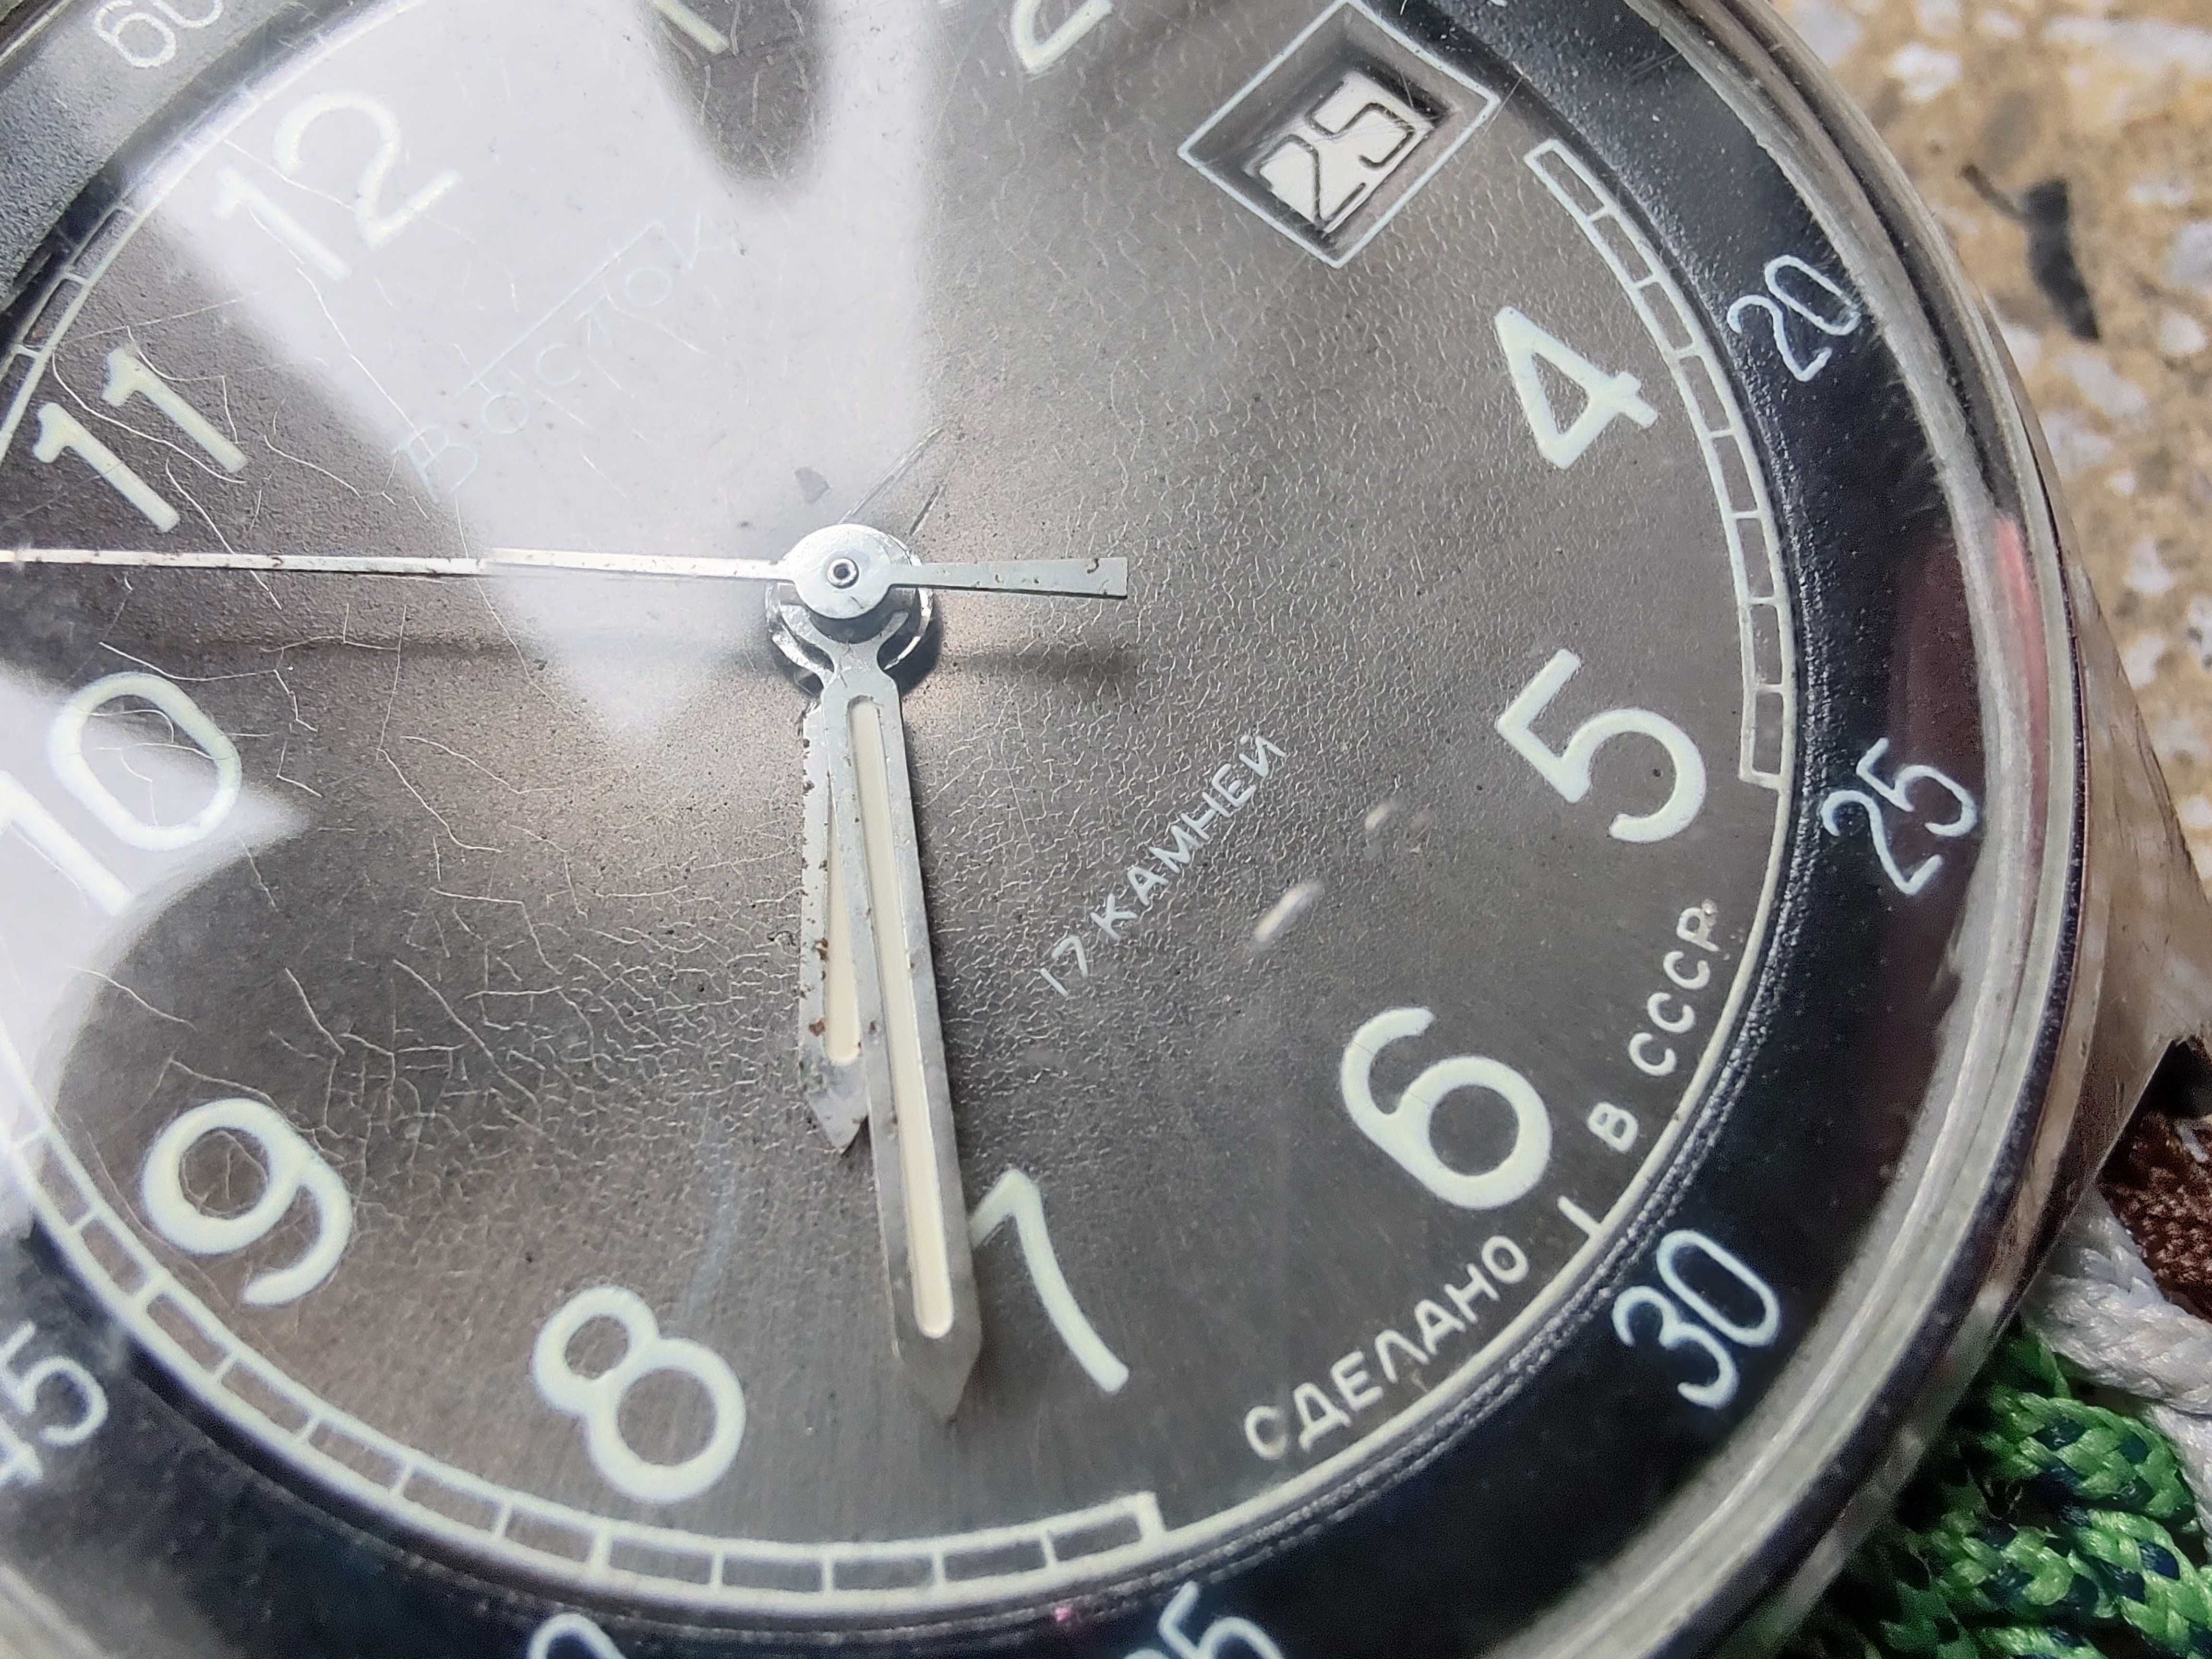 Zegarek mechaniczny Wostok (Boctok, Vostok, Восто́к) - lata '80